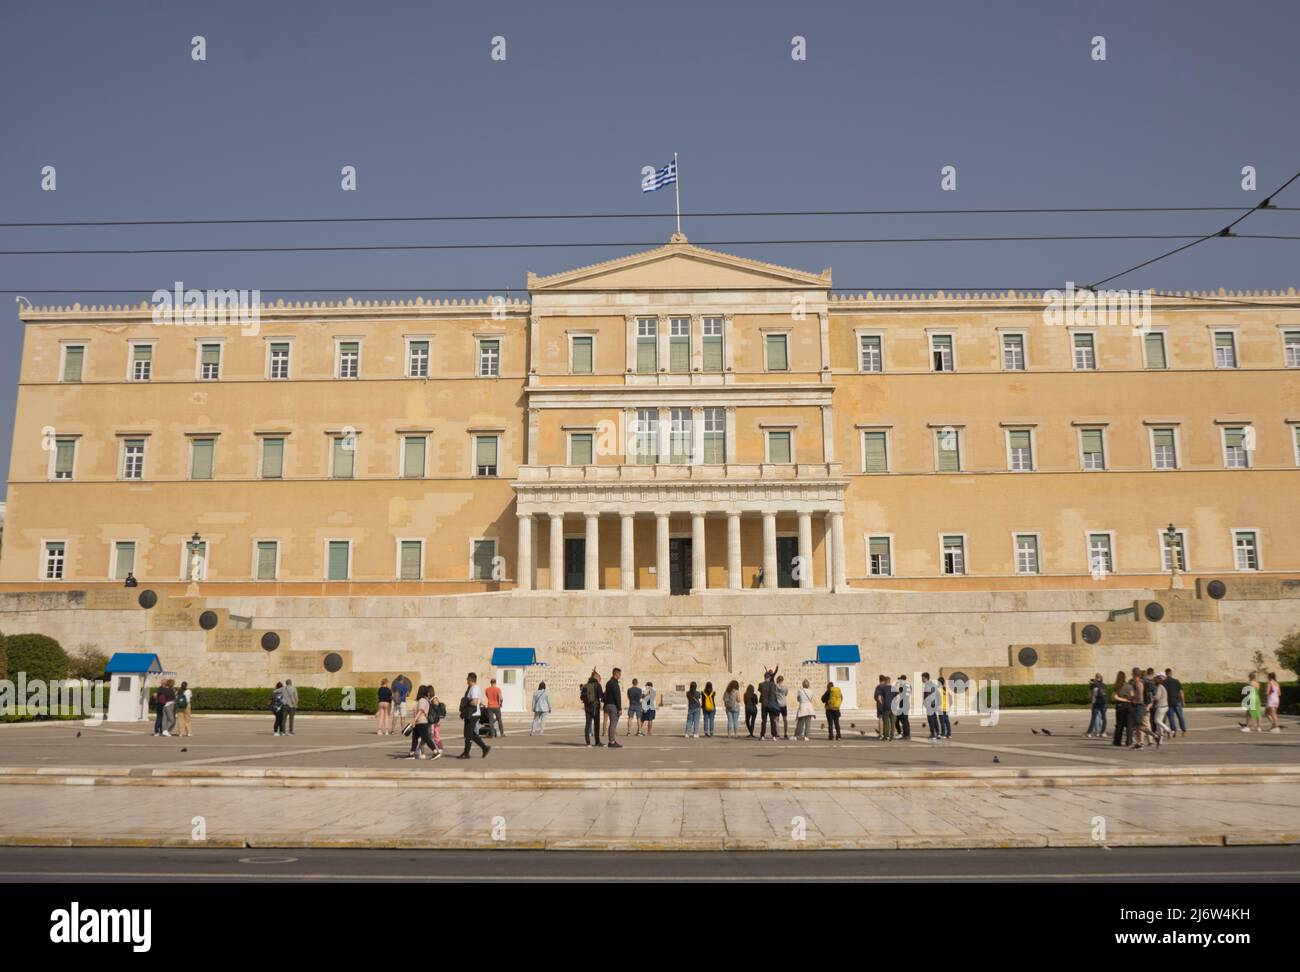 Touristes et visiteurs voient le changement de garde à la place Syntagma par l'ancien Palais Royal, abritant le Parlement grec depuis 1934, Athènes, Grèce, Europ Banque D'Images